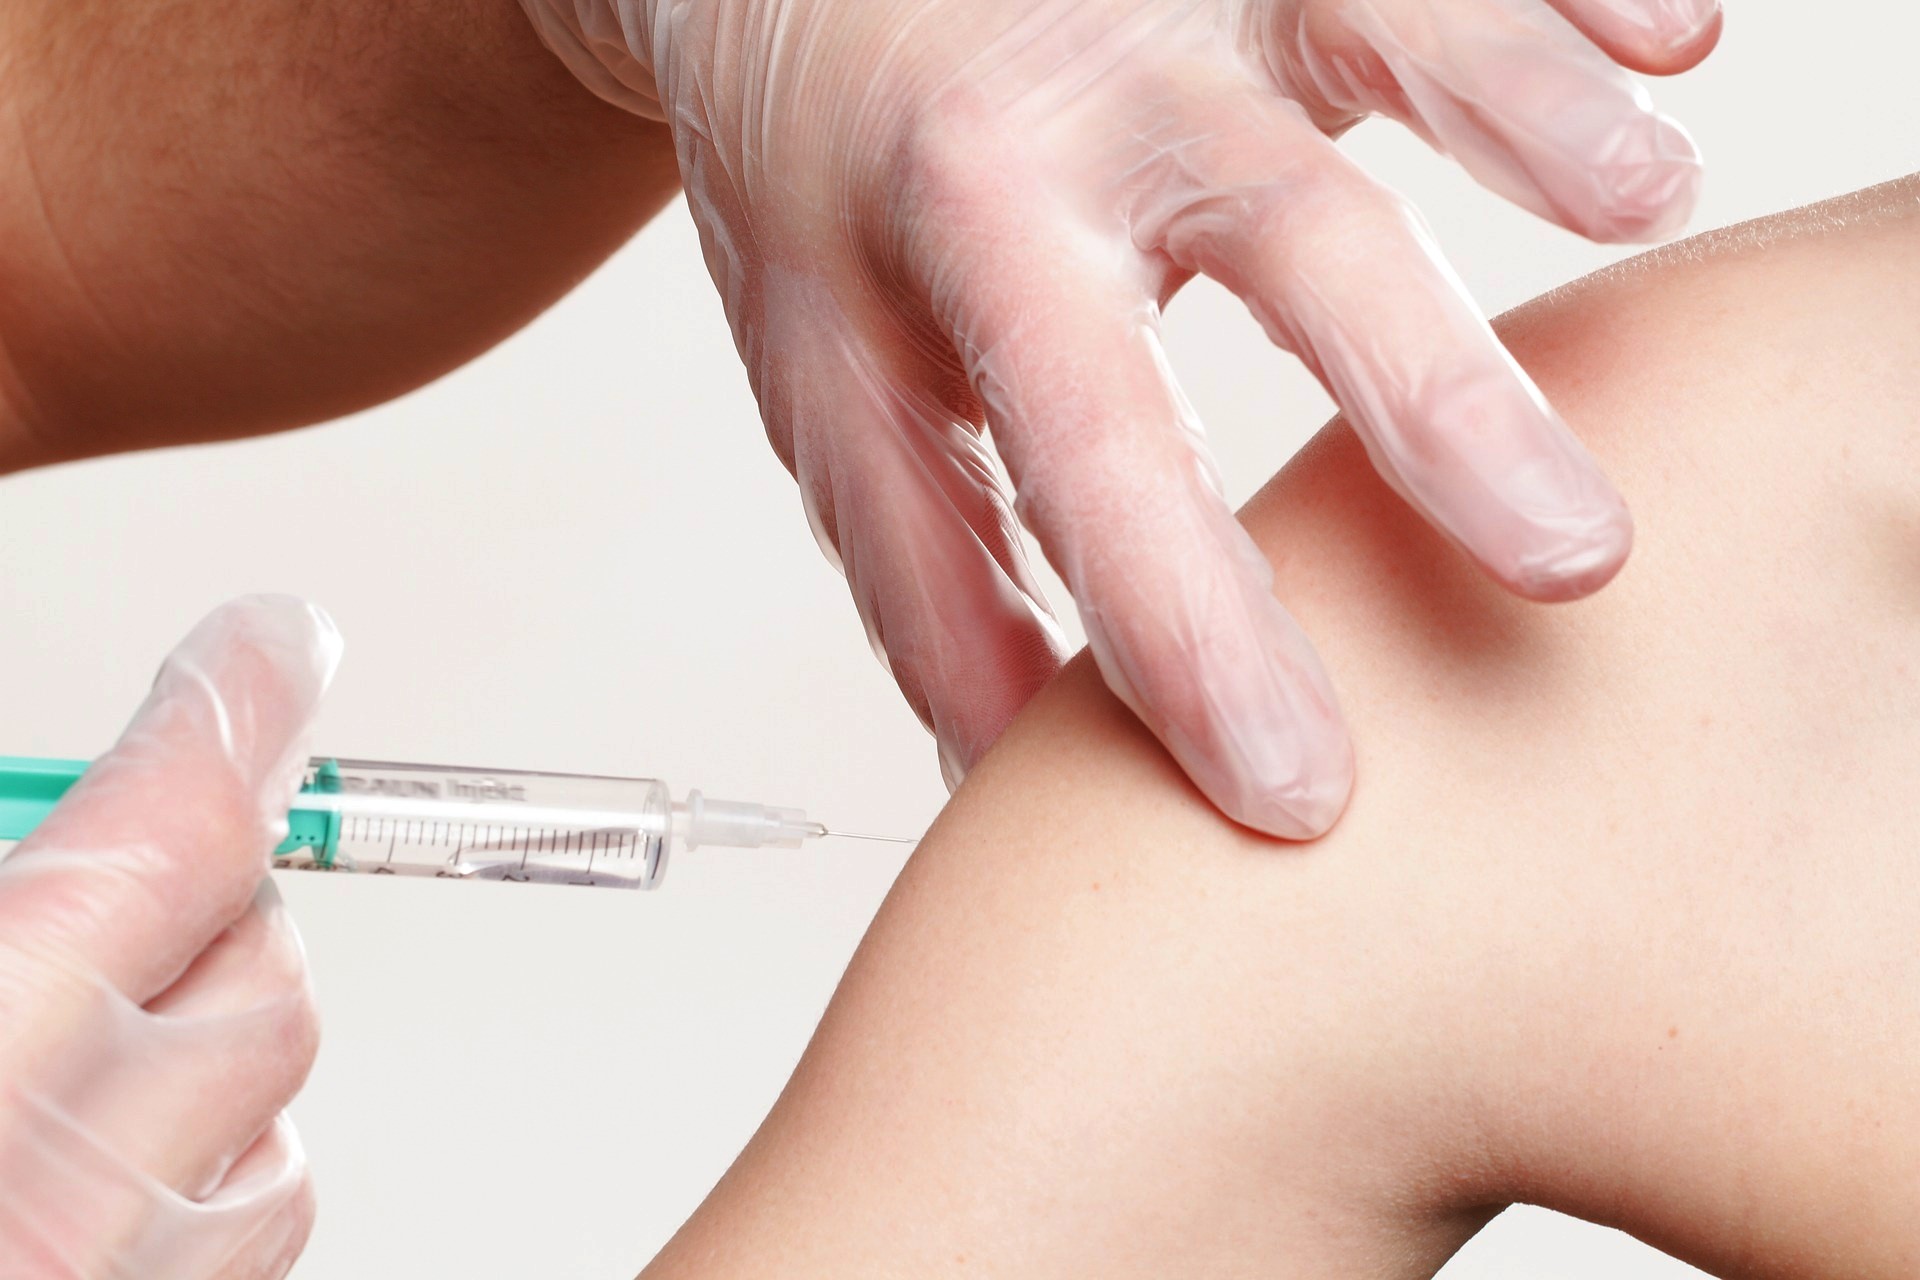 Bezpłatne  szczepienia  przeciwko grypie dla mieszańców Gminy Dobra